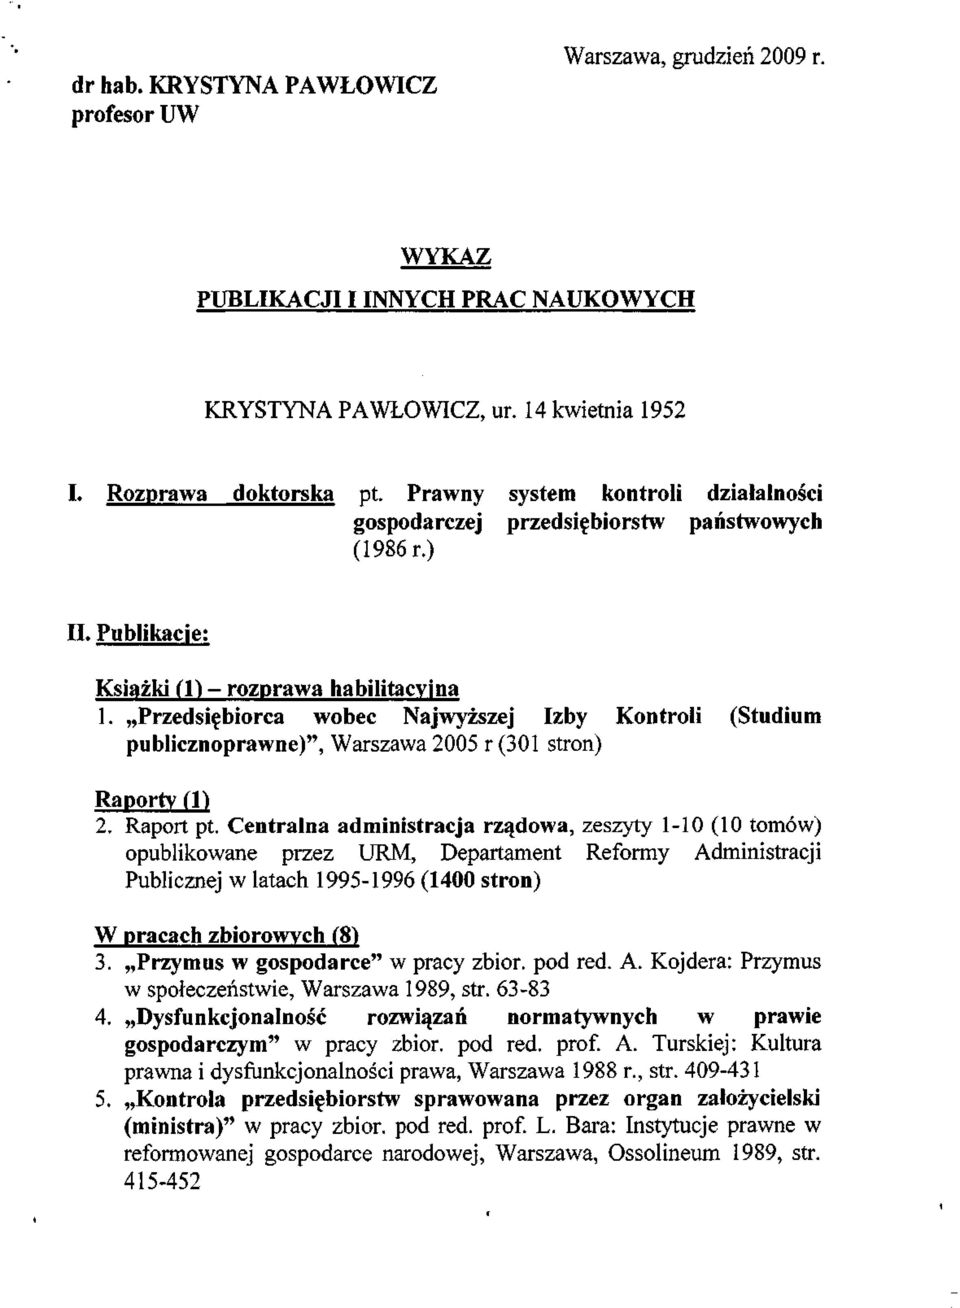 Przedsiębiorca wobec Najwyższej Izby Kontroli (Studium publicznoprawne)", Warszawa 2005 r (301 stron) Raporty (1) 2. Raport pt.